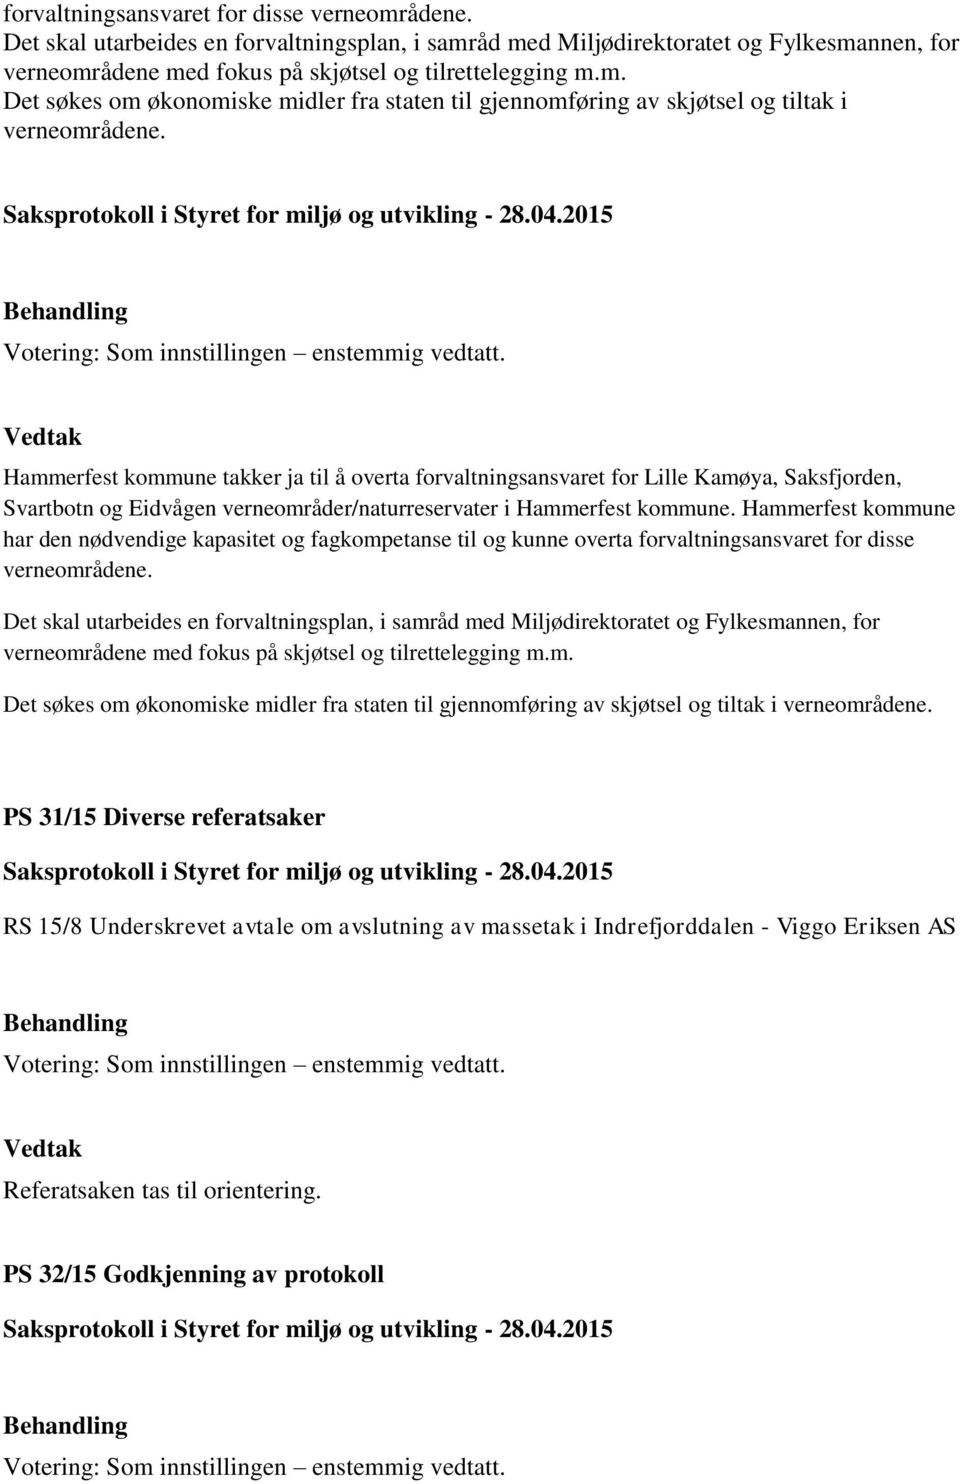 Hammerfest kommune har den nødvendige kapasitet og fagkompetanse til og kunne overta  PS 31/15 Diverse referatsaker RS 15/8 Underskrevet avtale om avslutning av massetak i Indrefjorddalen - Viggo